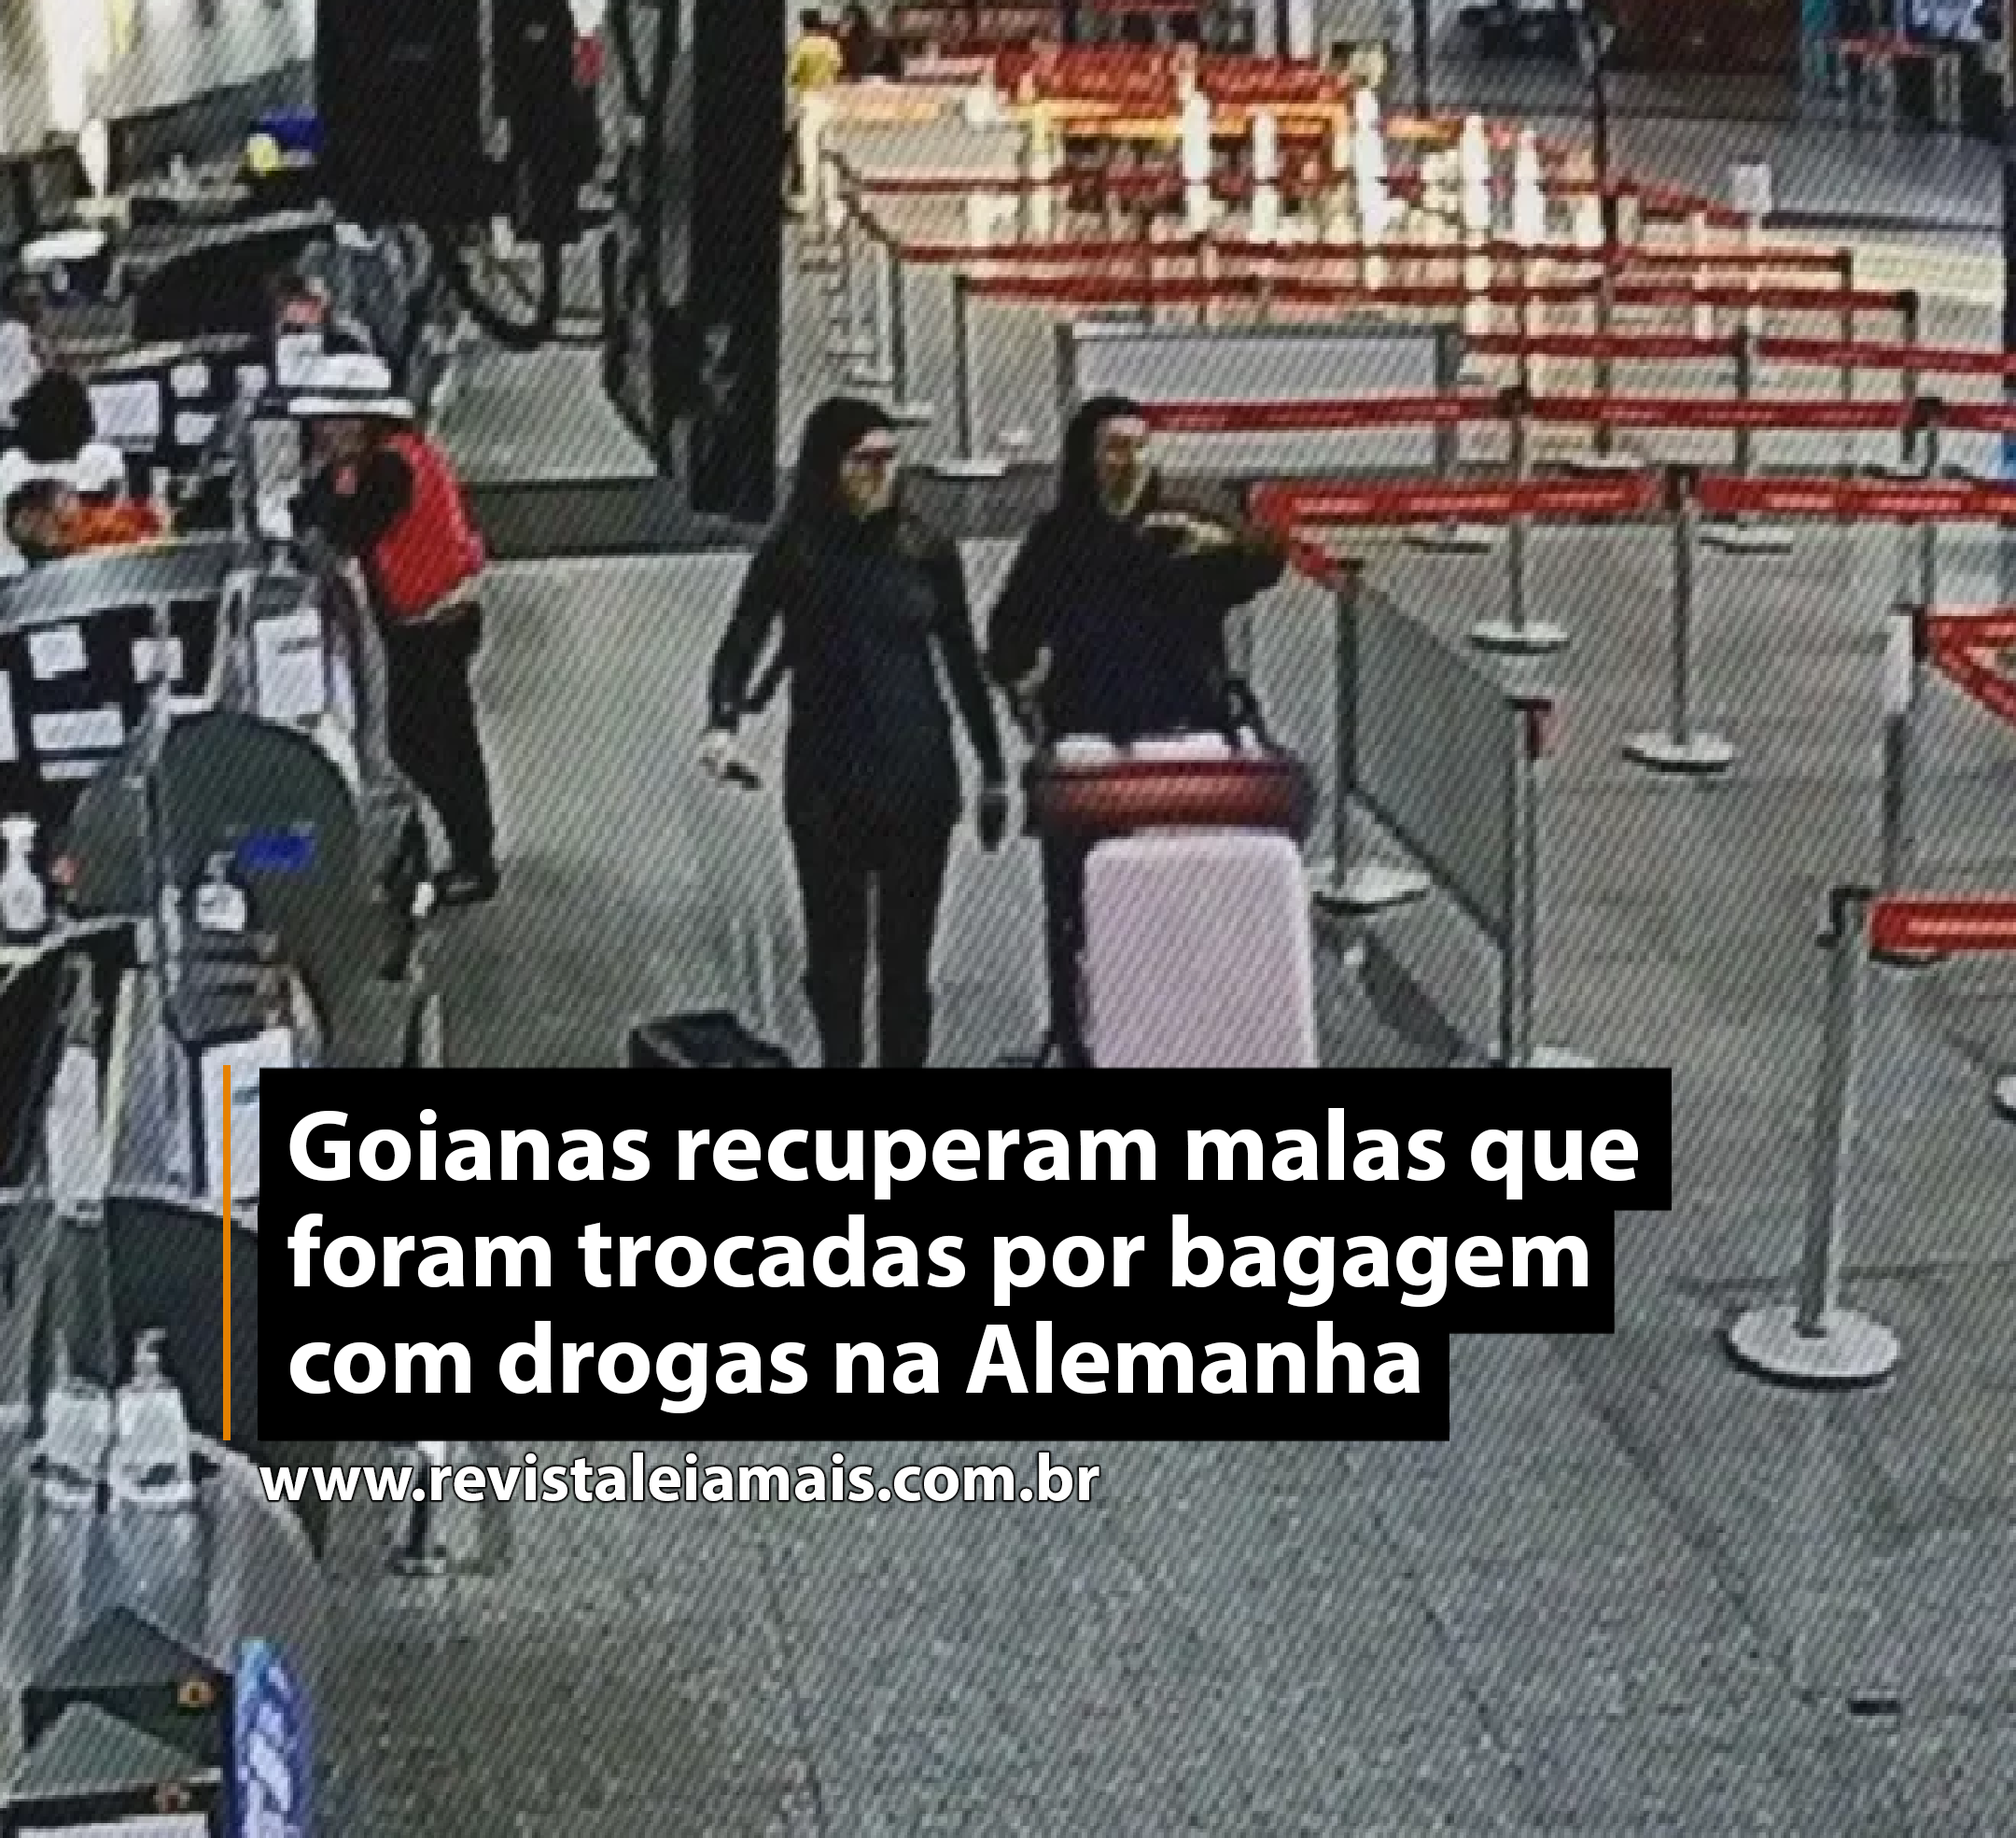 Goianas recuperam malas que foram trocadas por bagagem com drogas na Alemanha